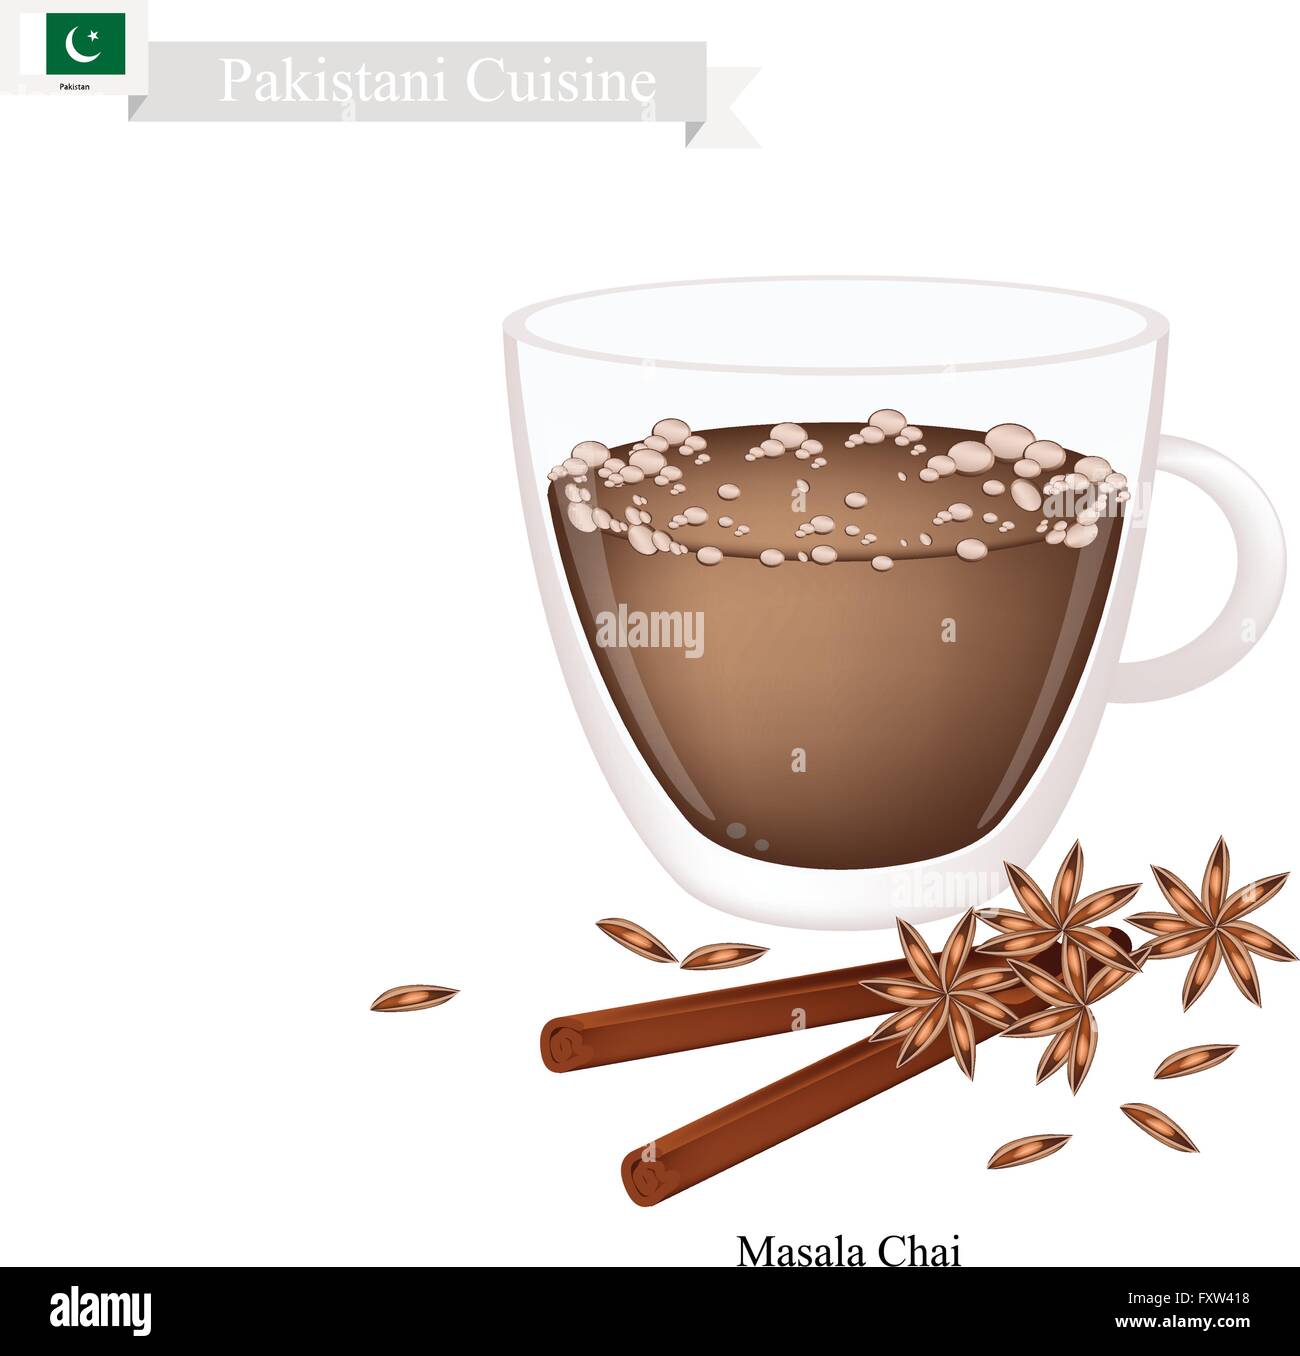 Cuisine pakistanaise, chai masala ou traditionnel noir chaud thé sucré avec des épices. L'un de la boisson la plus populaire au Pakistan. Illustration de Vecteur